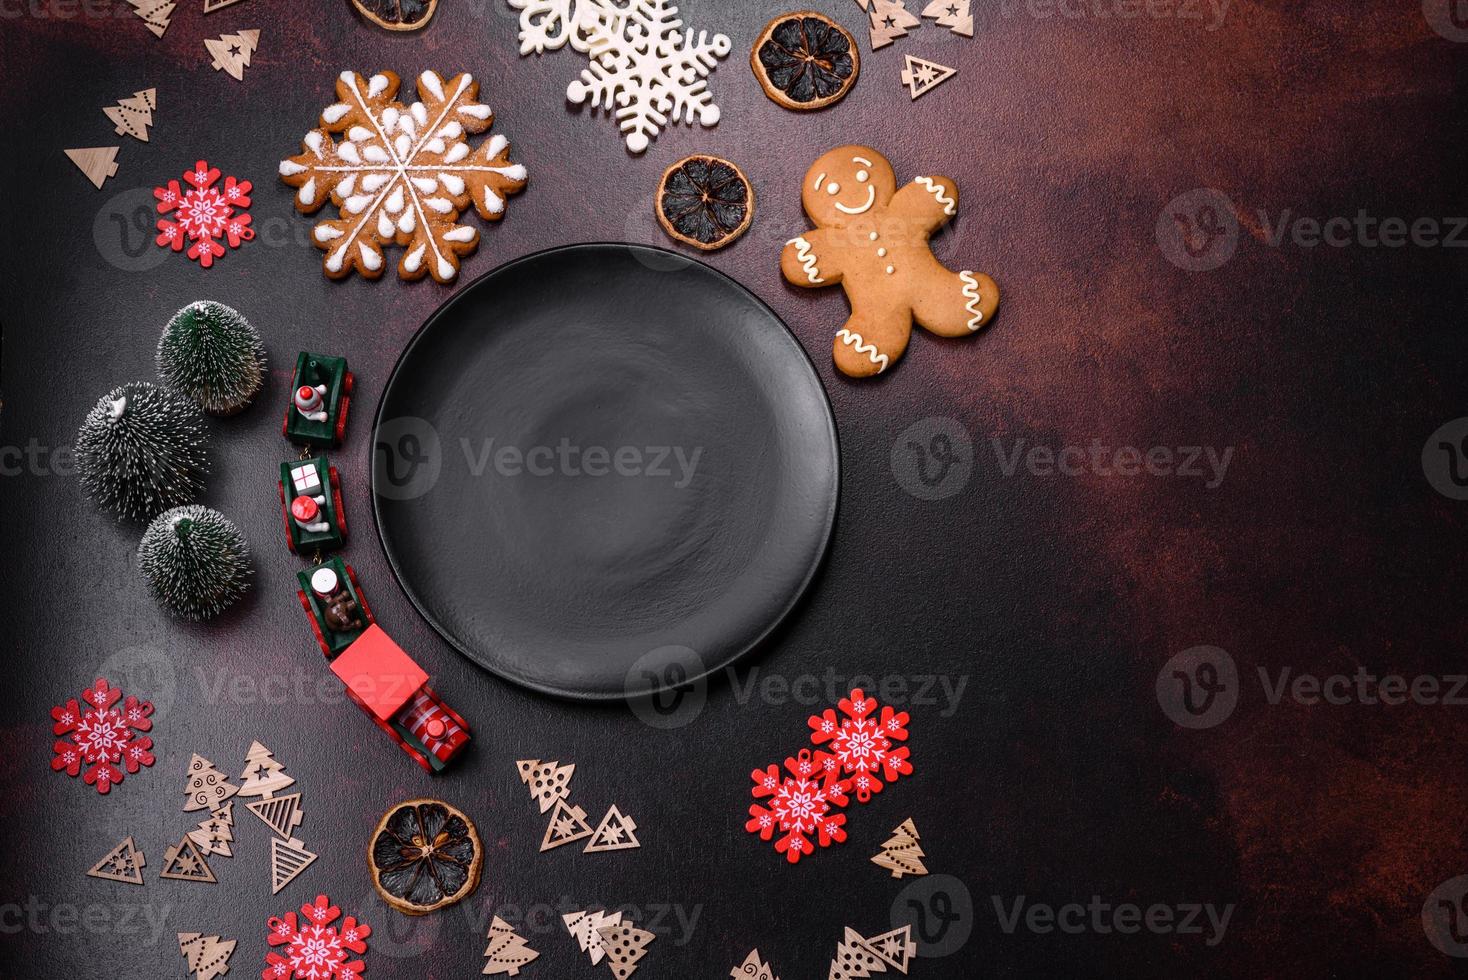 Hem festlig jul tabell dekorerad förbi leksaker och pepparkakor foto